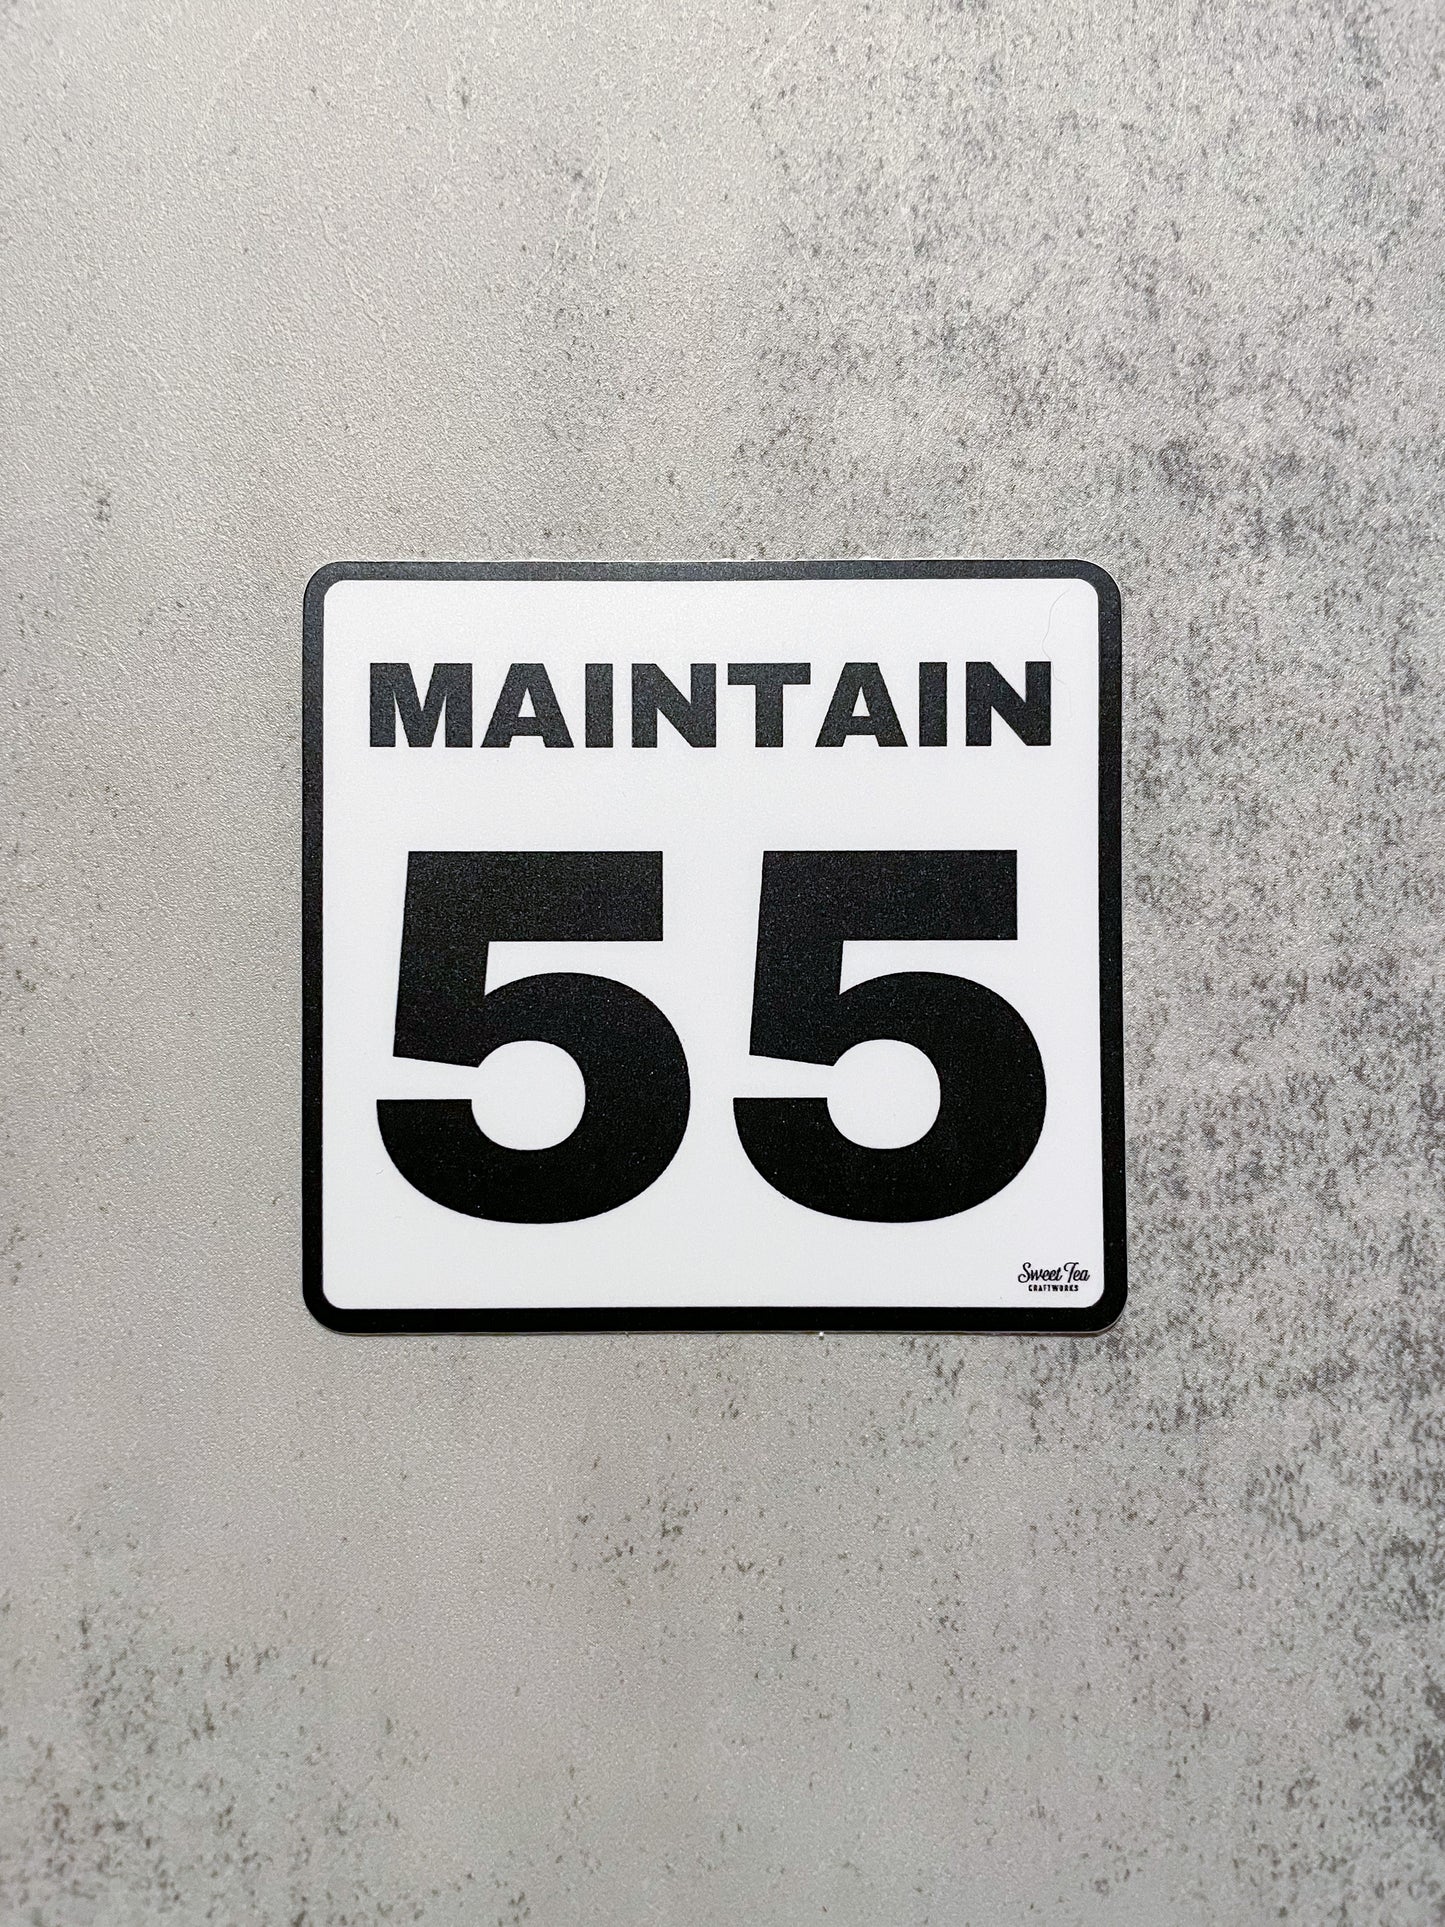 Maintain 55 Sticker